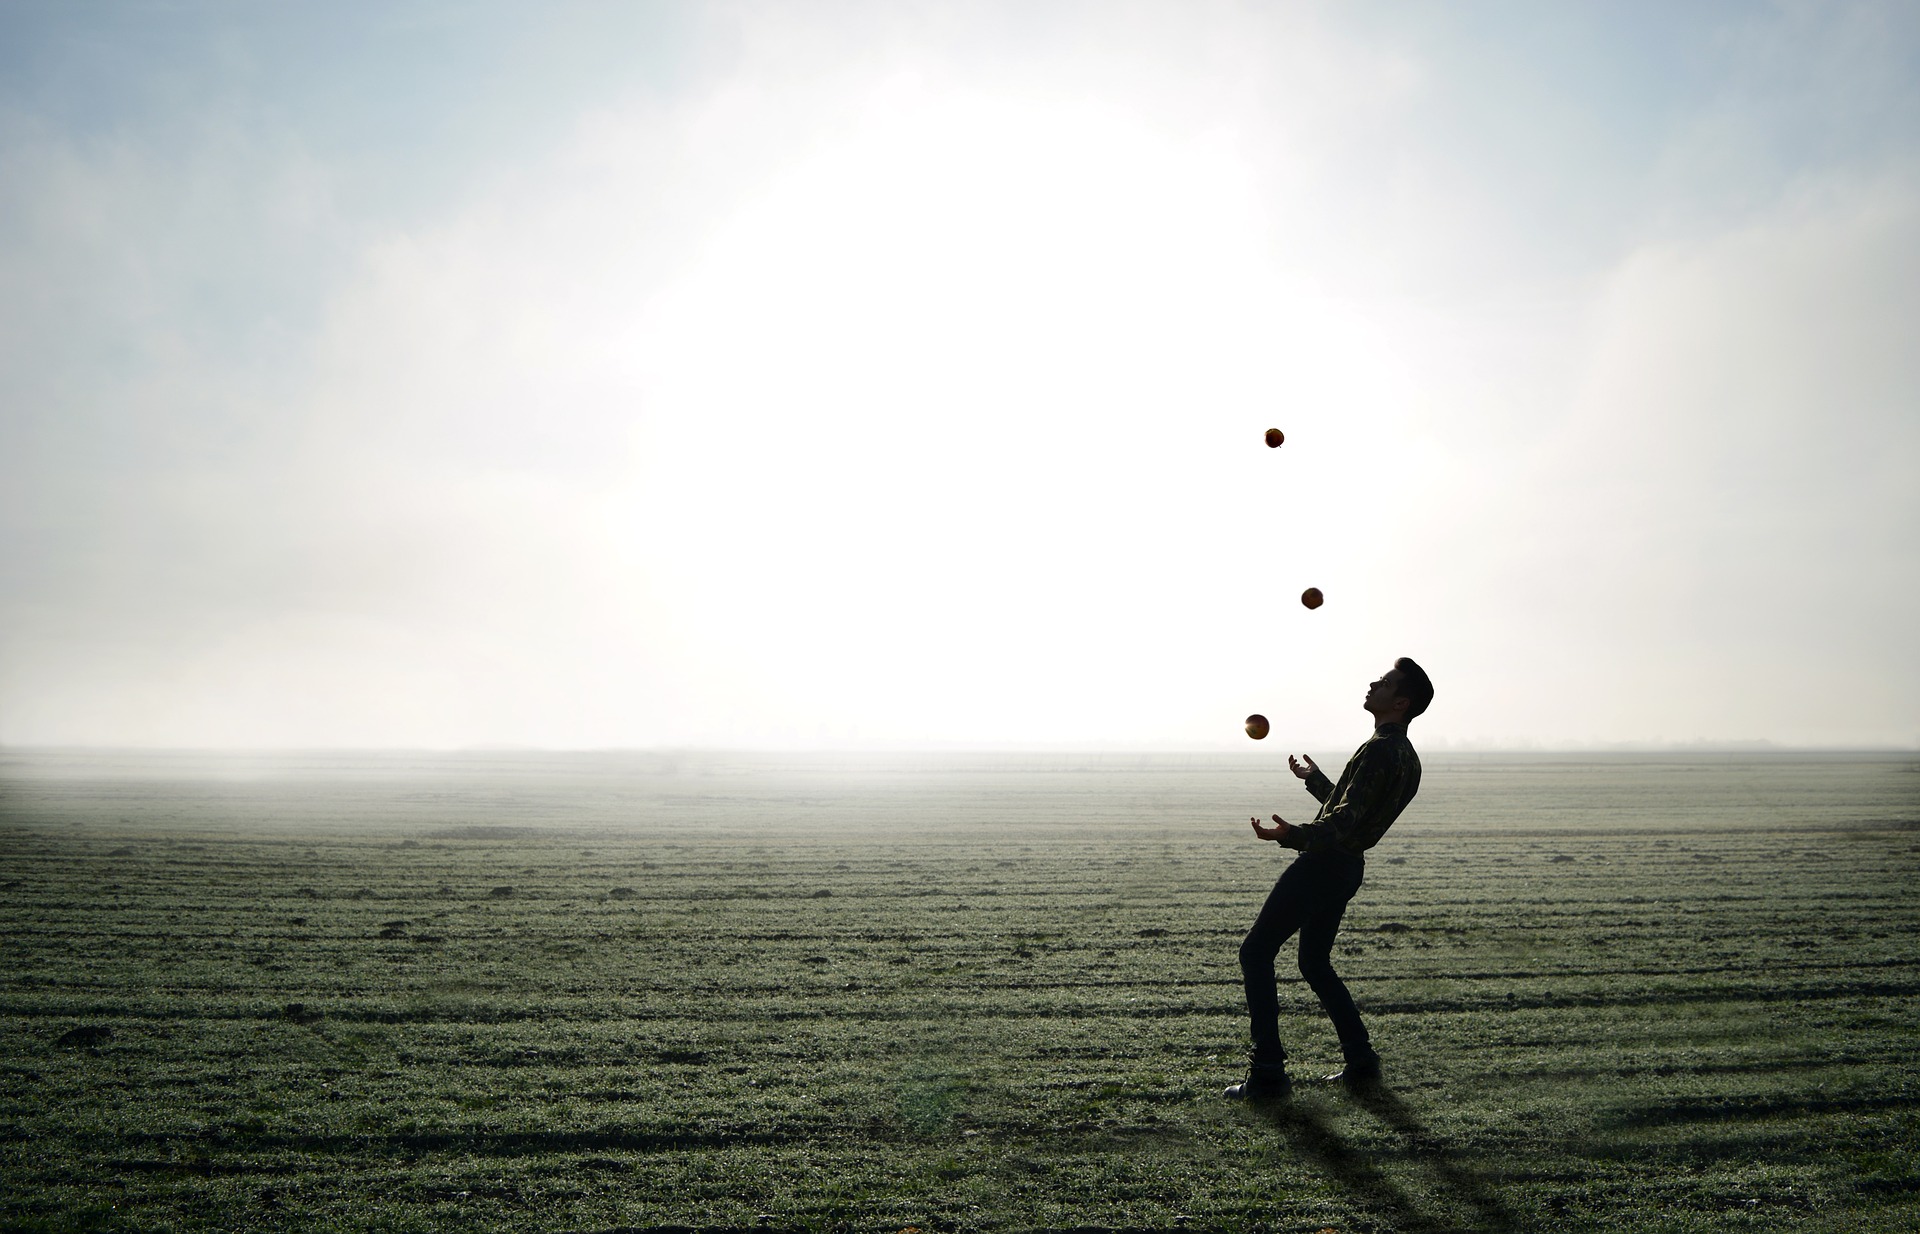 Ein Mann jongliert im Gegenlicht mit drei Bällen auf einem Feld, als Sinnbild für das Auflösen von negativen Gefühlen in drei Schritten.